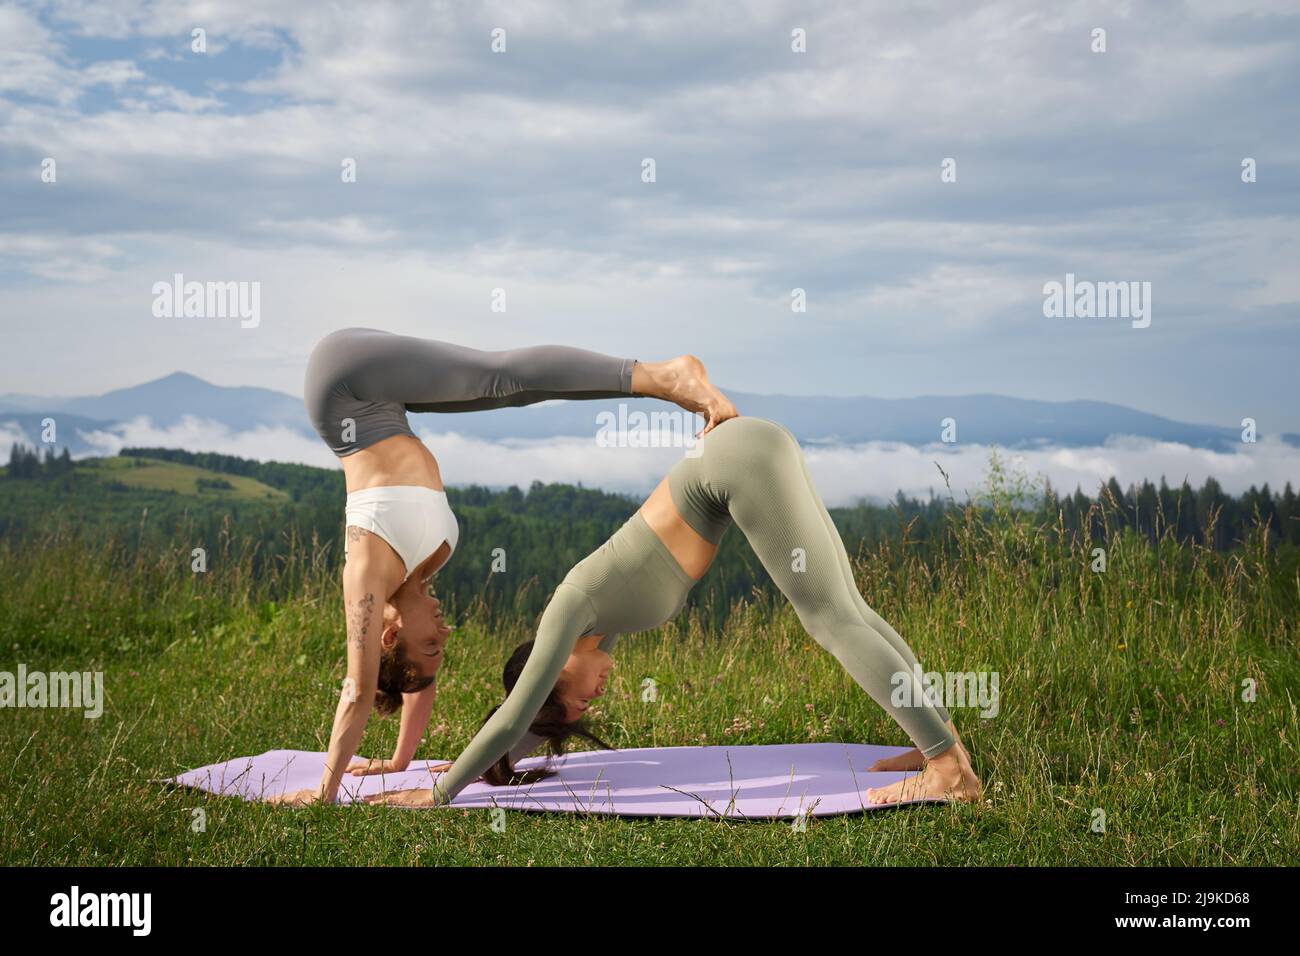 Fitness kaukasische Frauen in Sportkleidung trainieren gemeinsam auf einer Yogamatte inmitten wunderschöner Sommerberge. Zwei Freunde führen einen aktiven und gesunden Lebensstil. Stockfoto